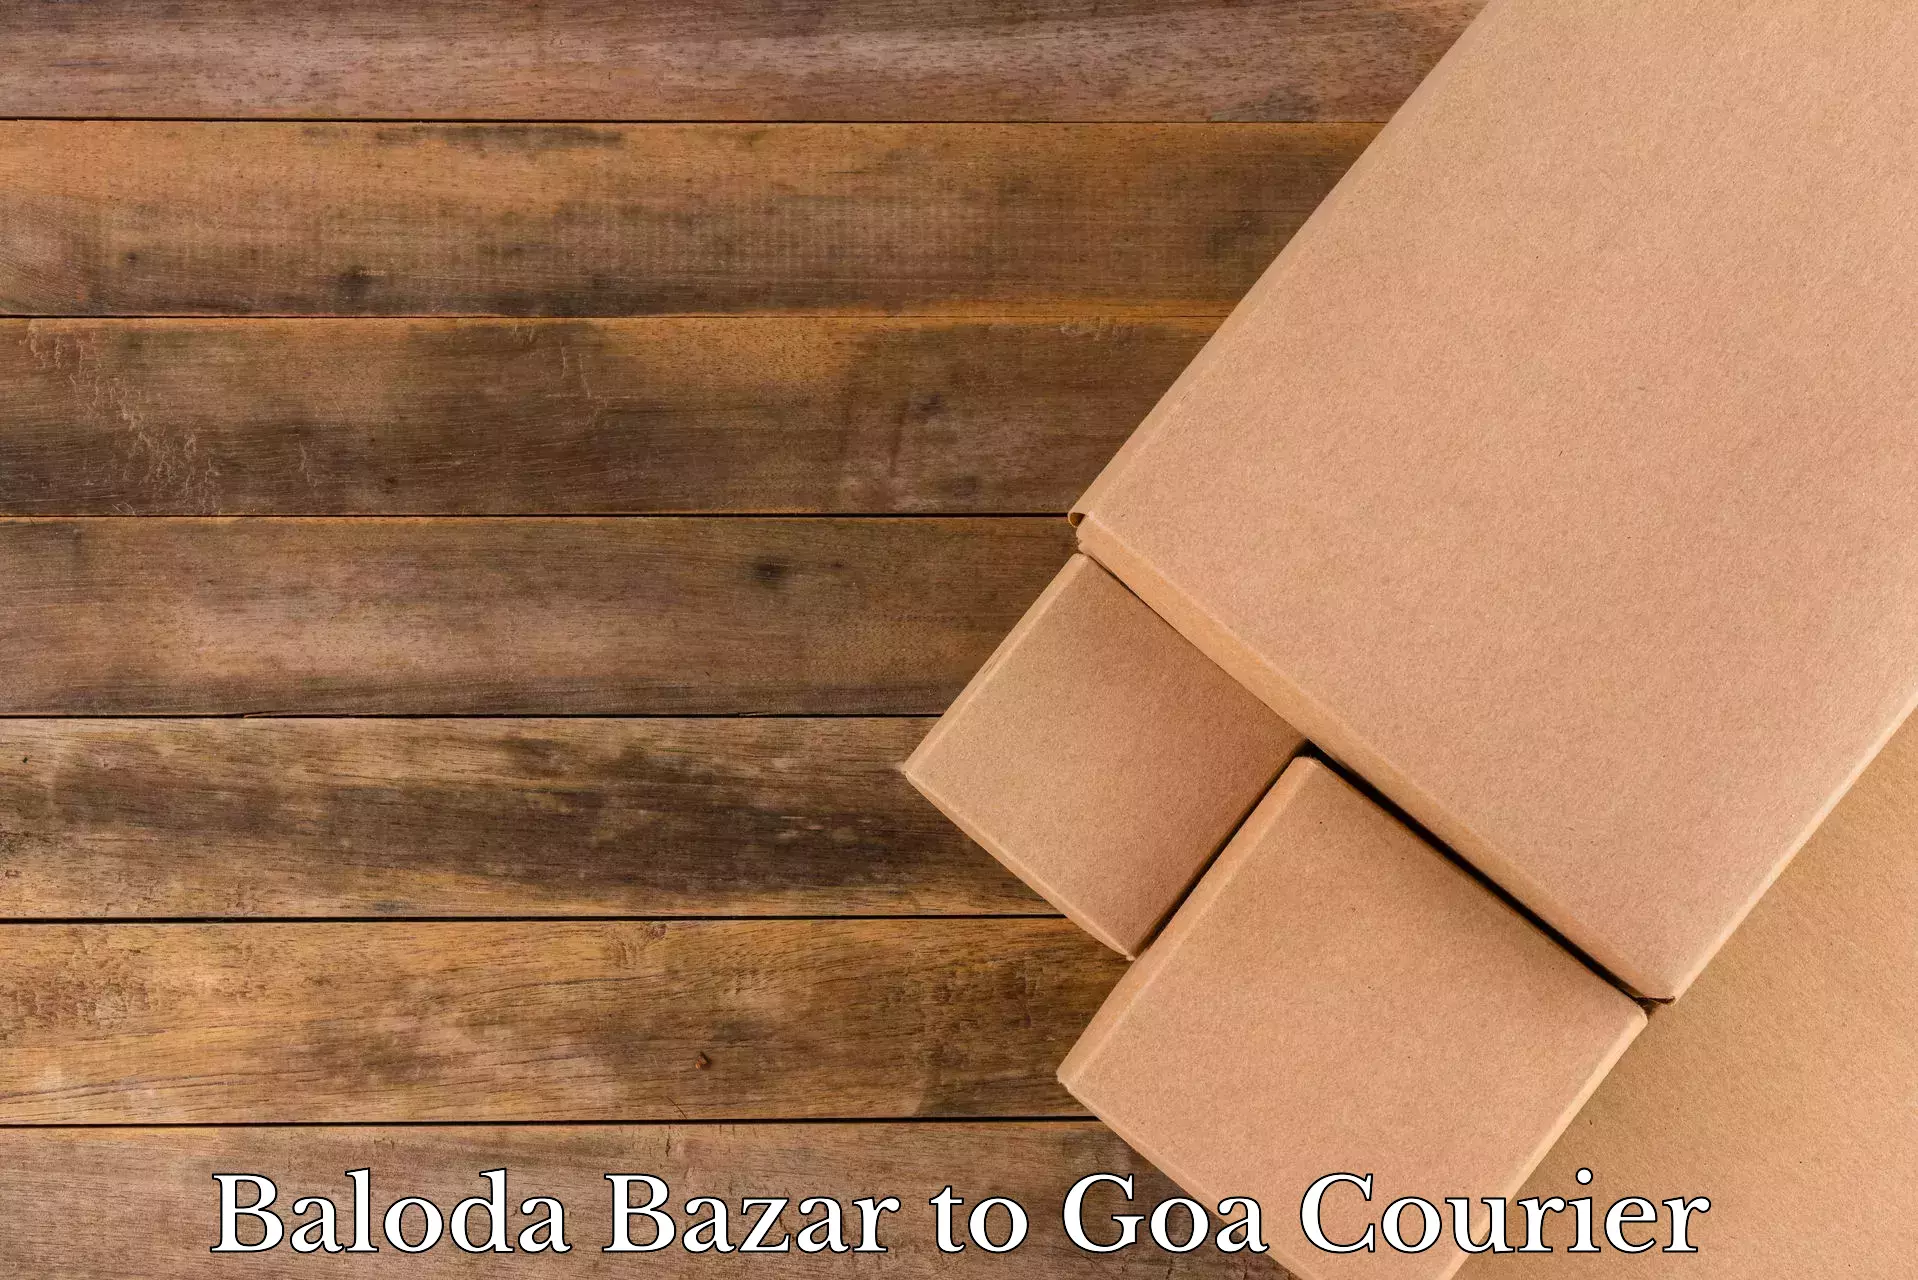 Home moving experts Baloda Bazar to Ponda